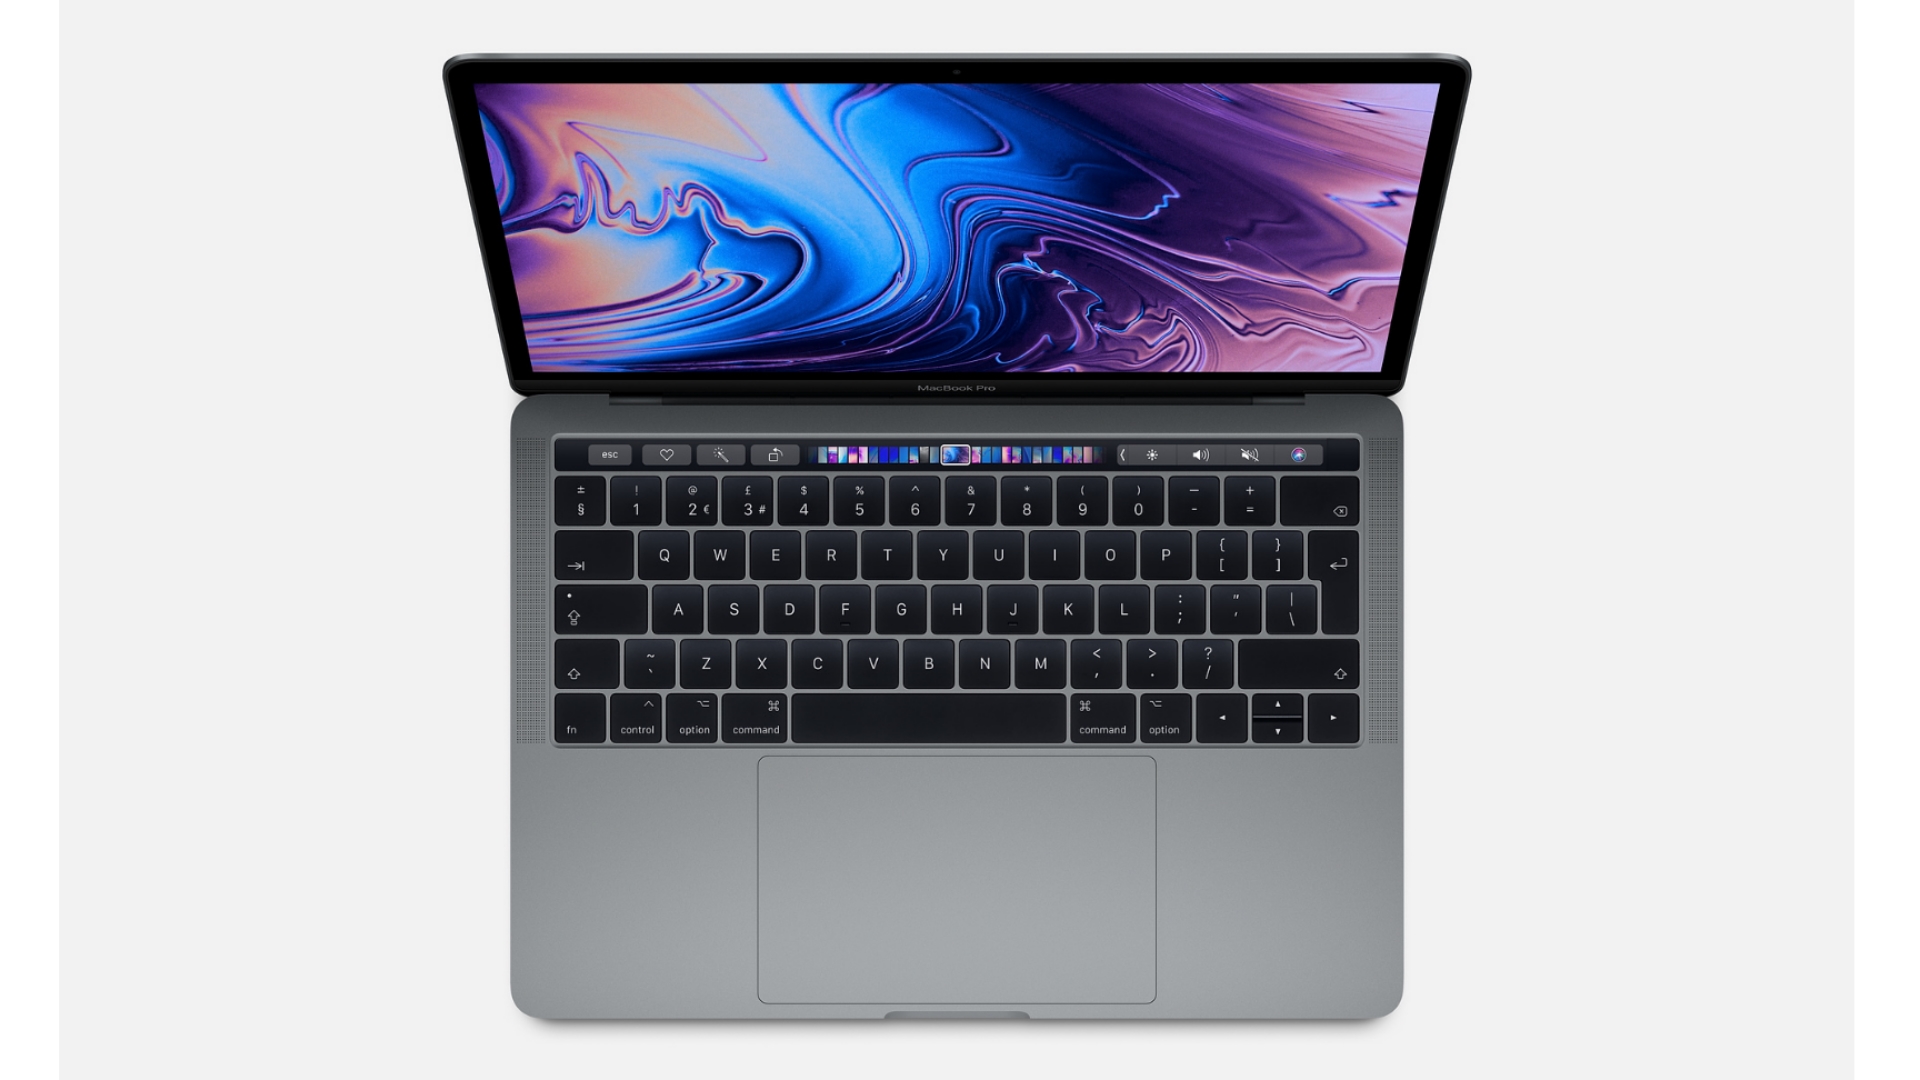 macbook pro 13-inch 2018 deals best price sales deals